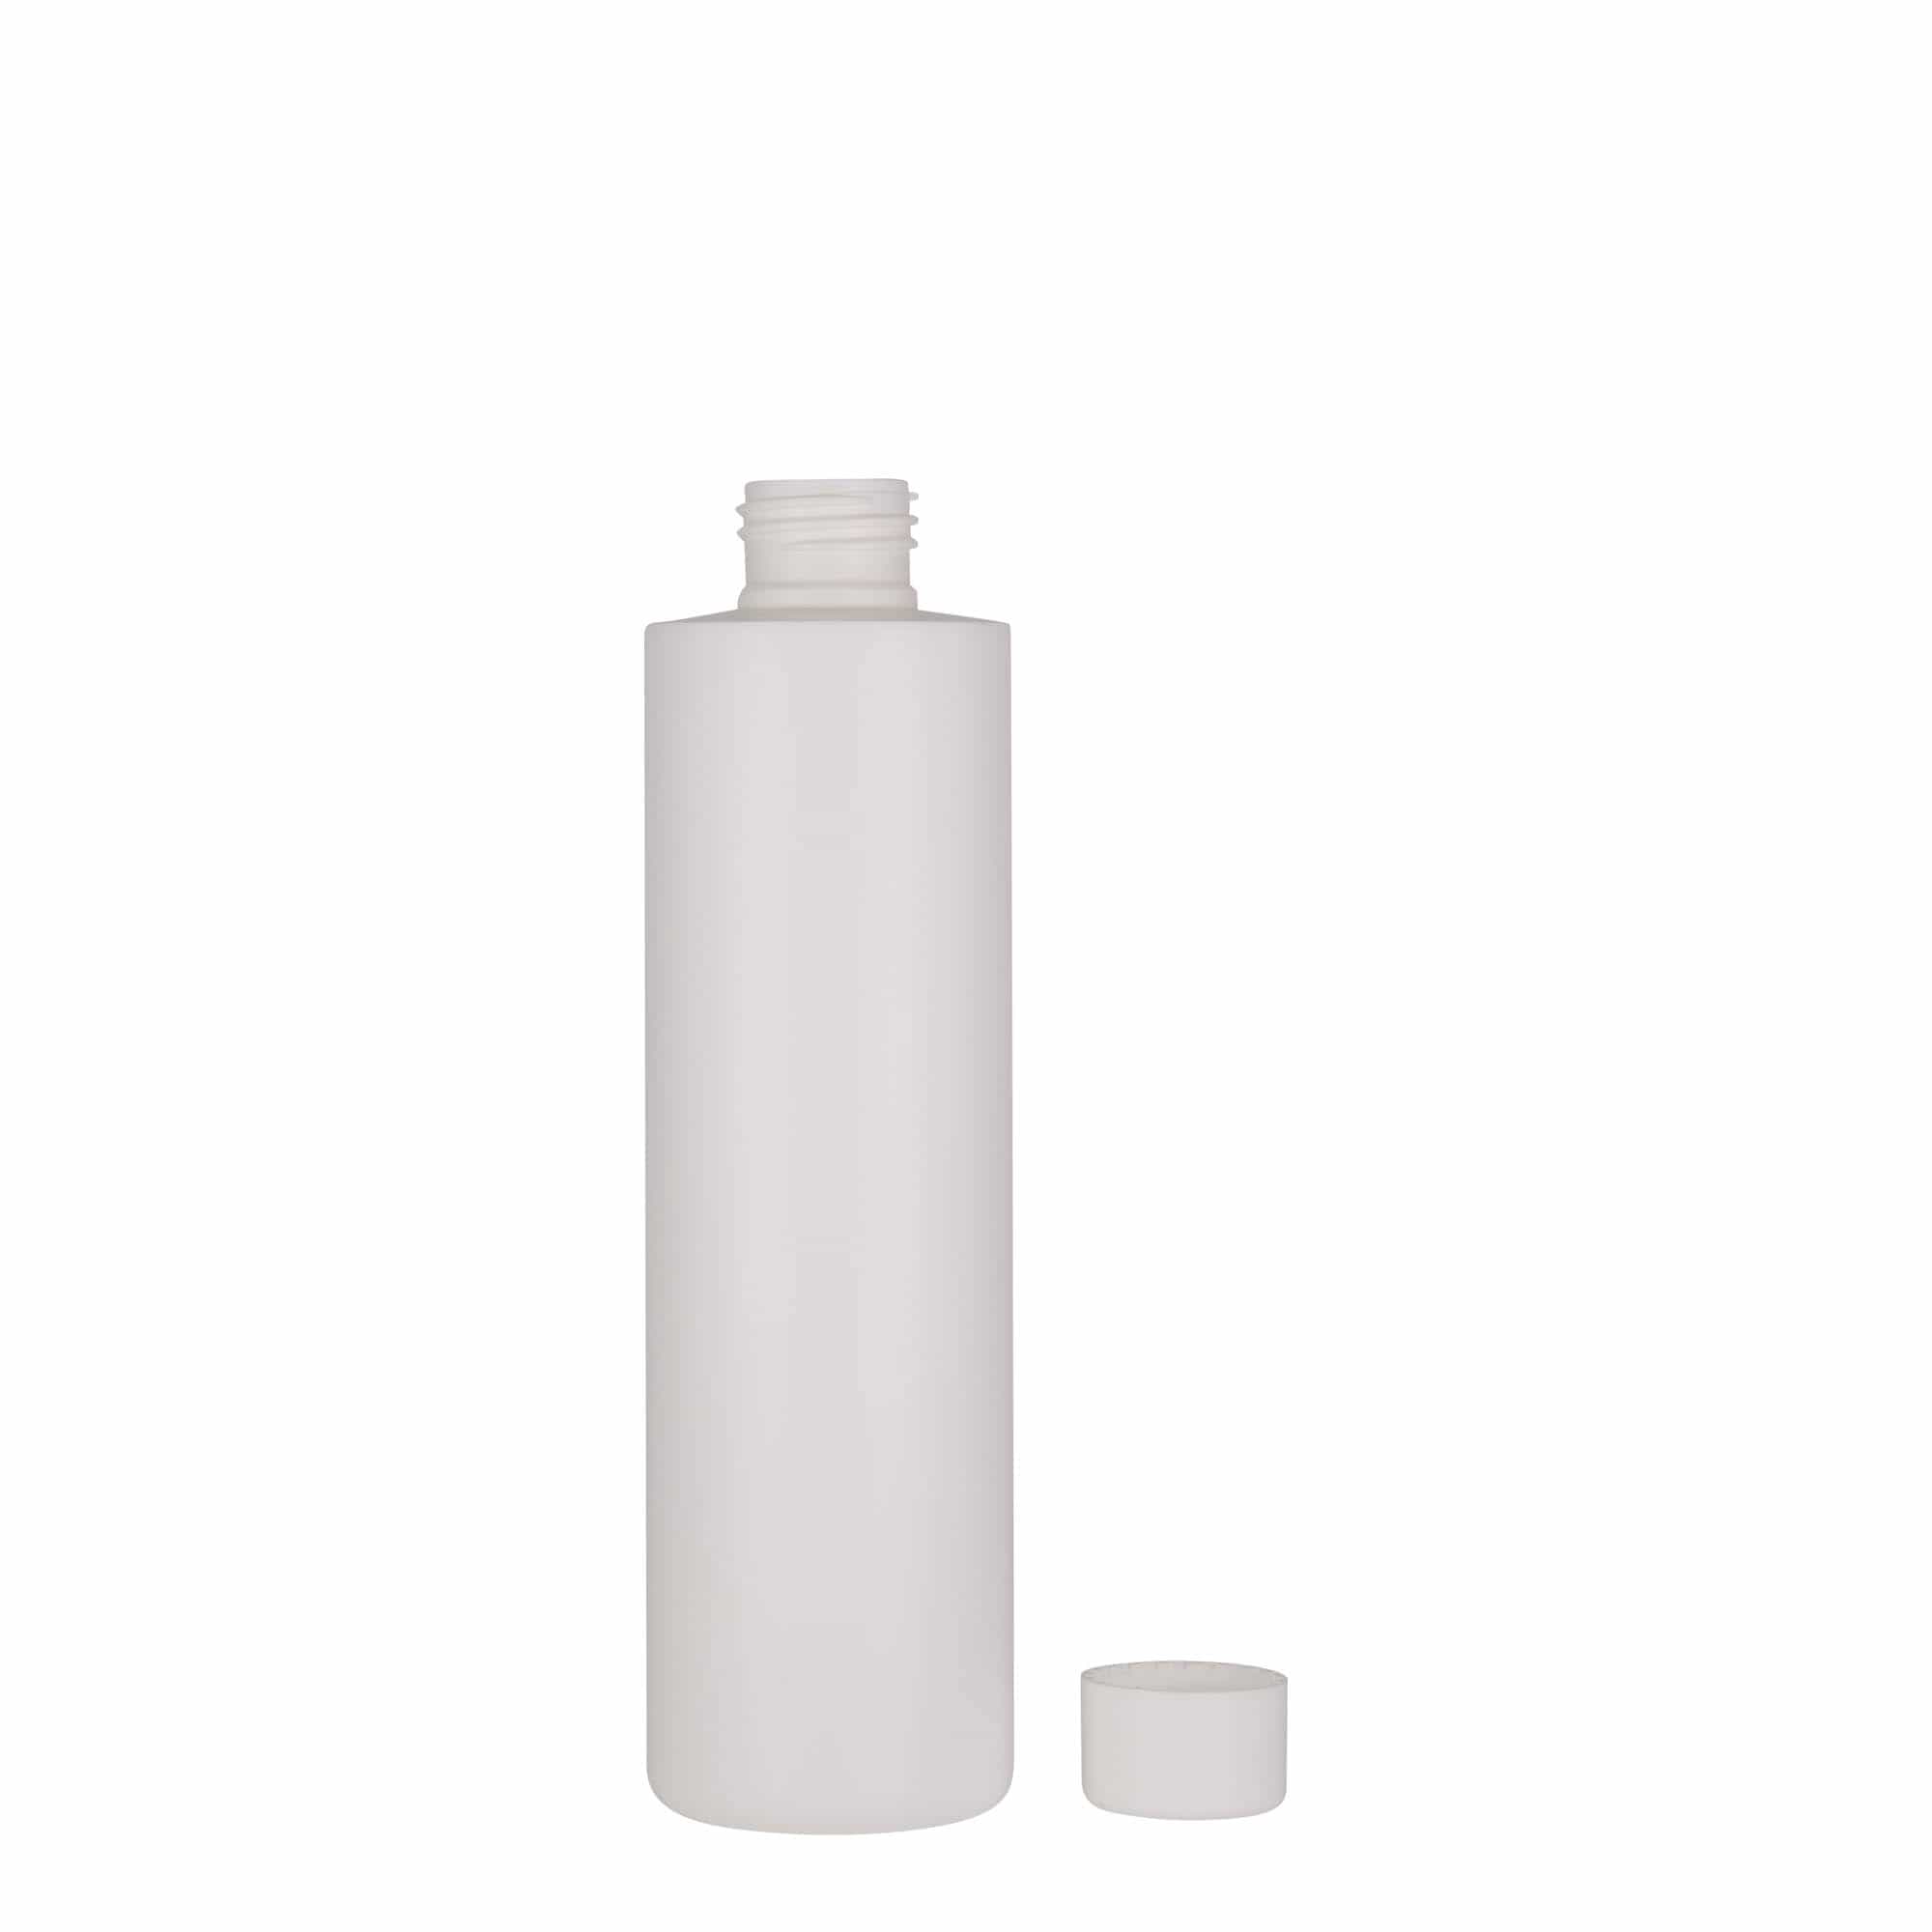 250 ml butelka z tworzywa sztucznego 'Pipe', HDPE, kolor biały, zamknięcie: GPI 24/410